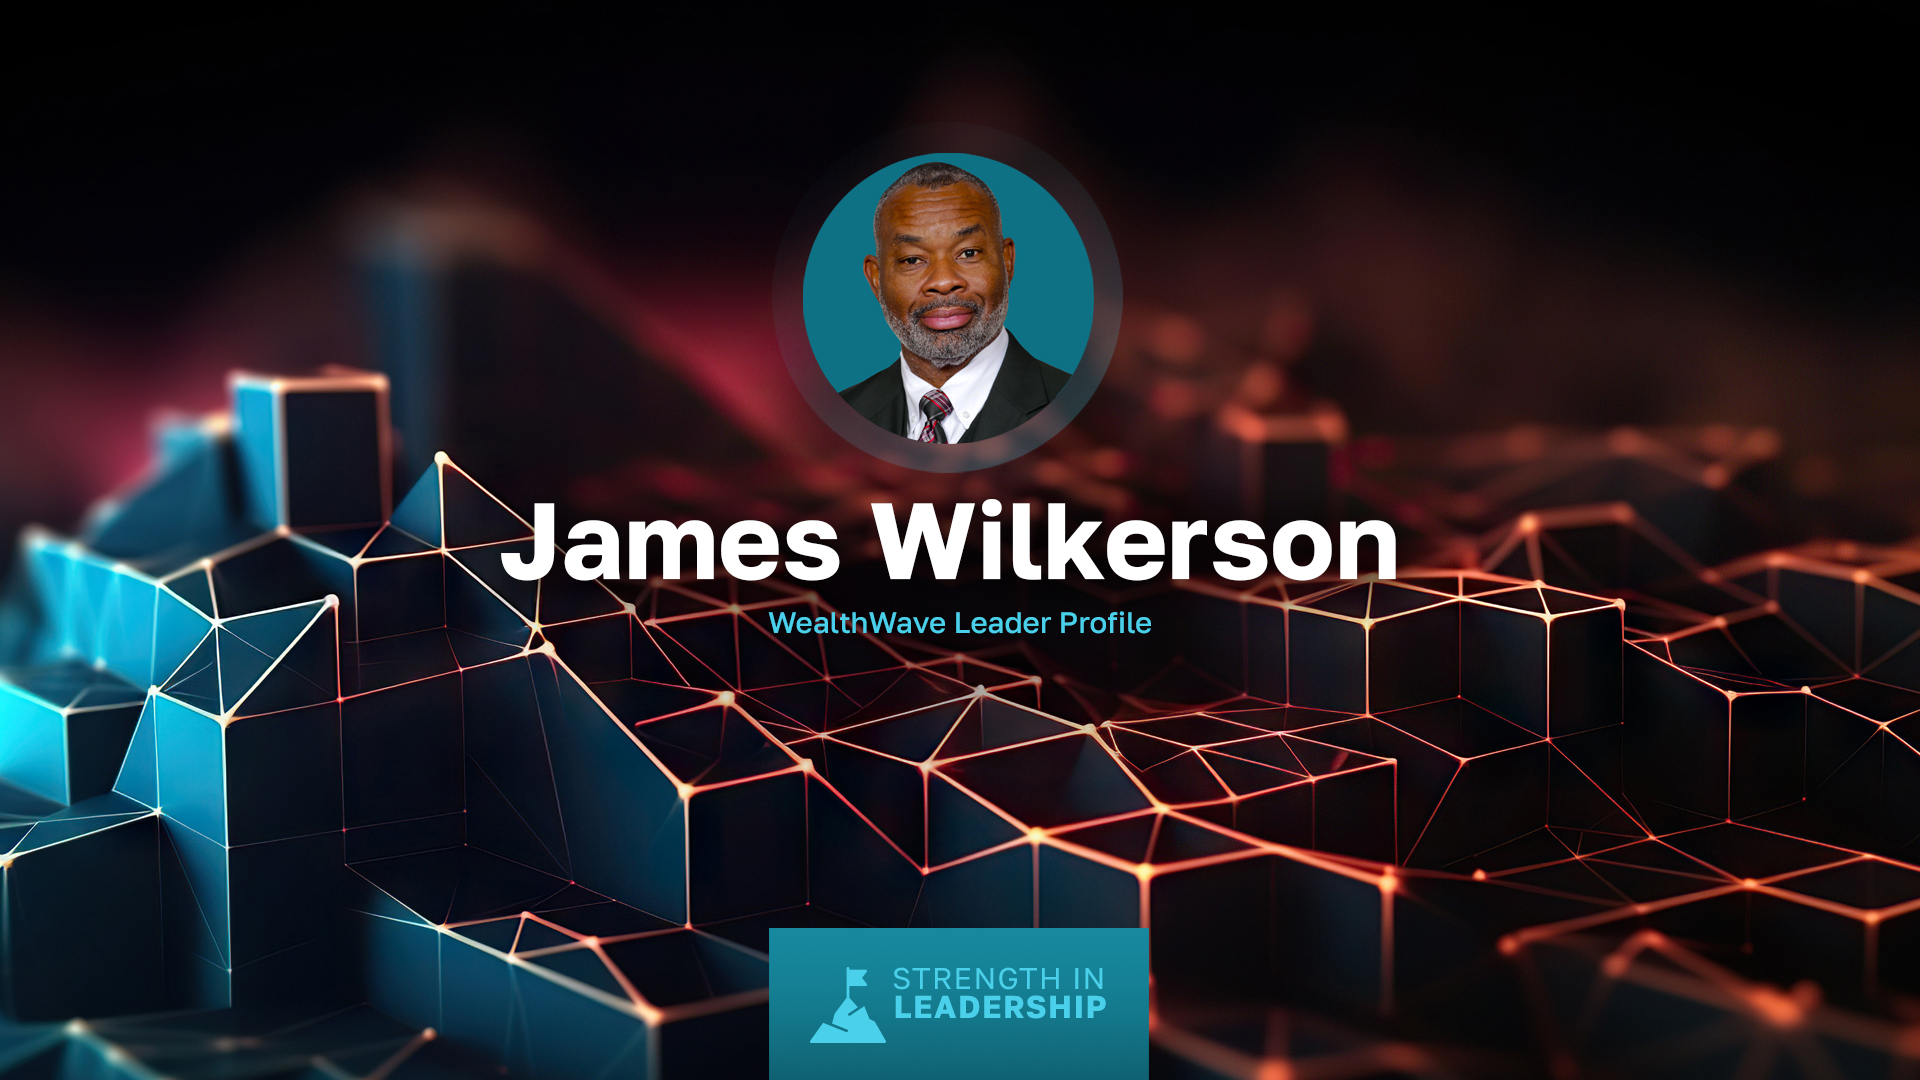 ملف تعريف القائد: جيمس ويلكرسون - من ضابط بحري إلى قائد الصناعة المالية